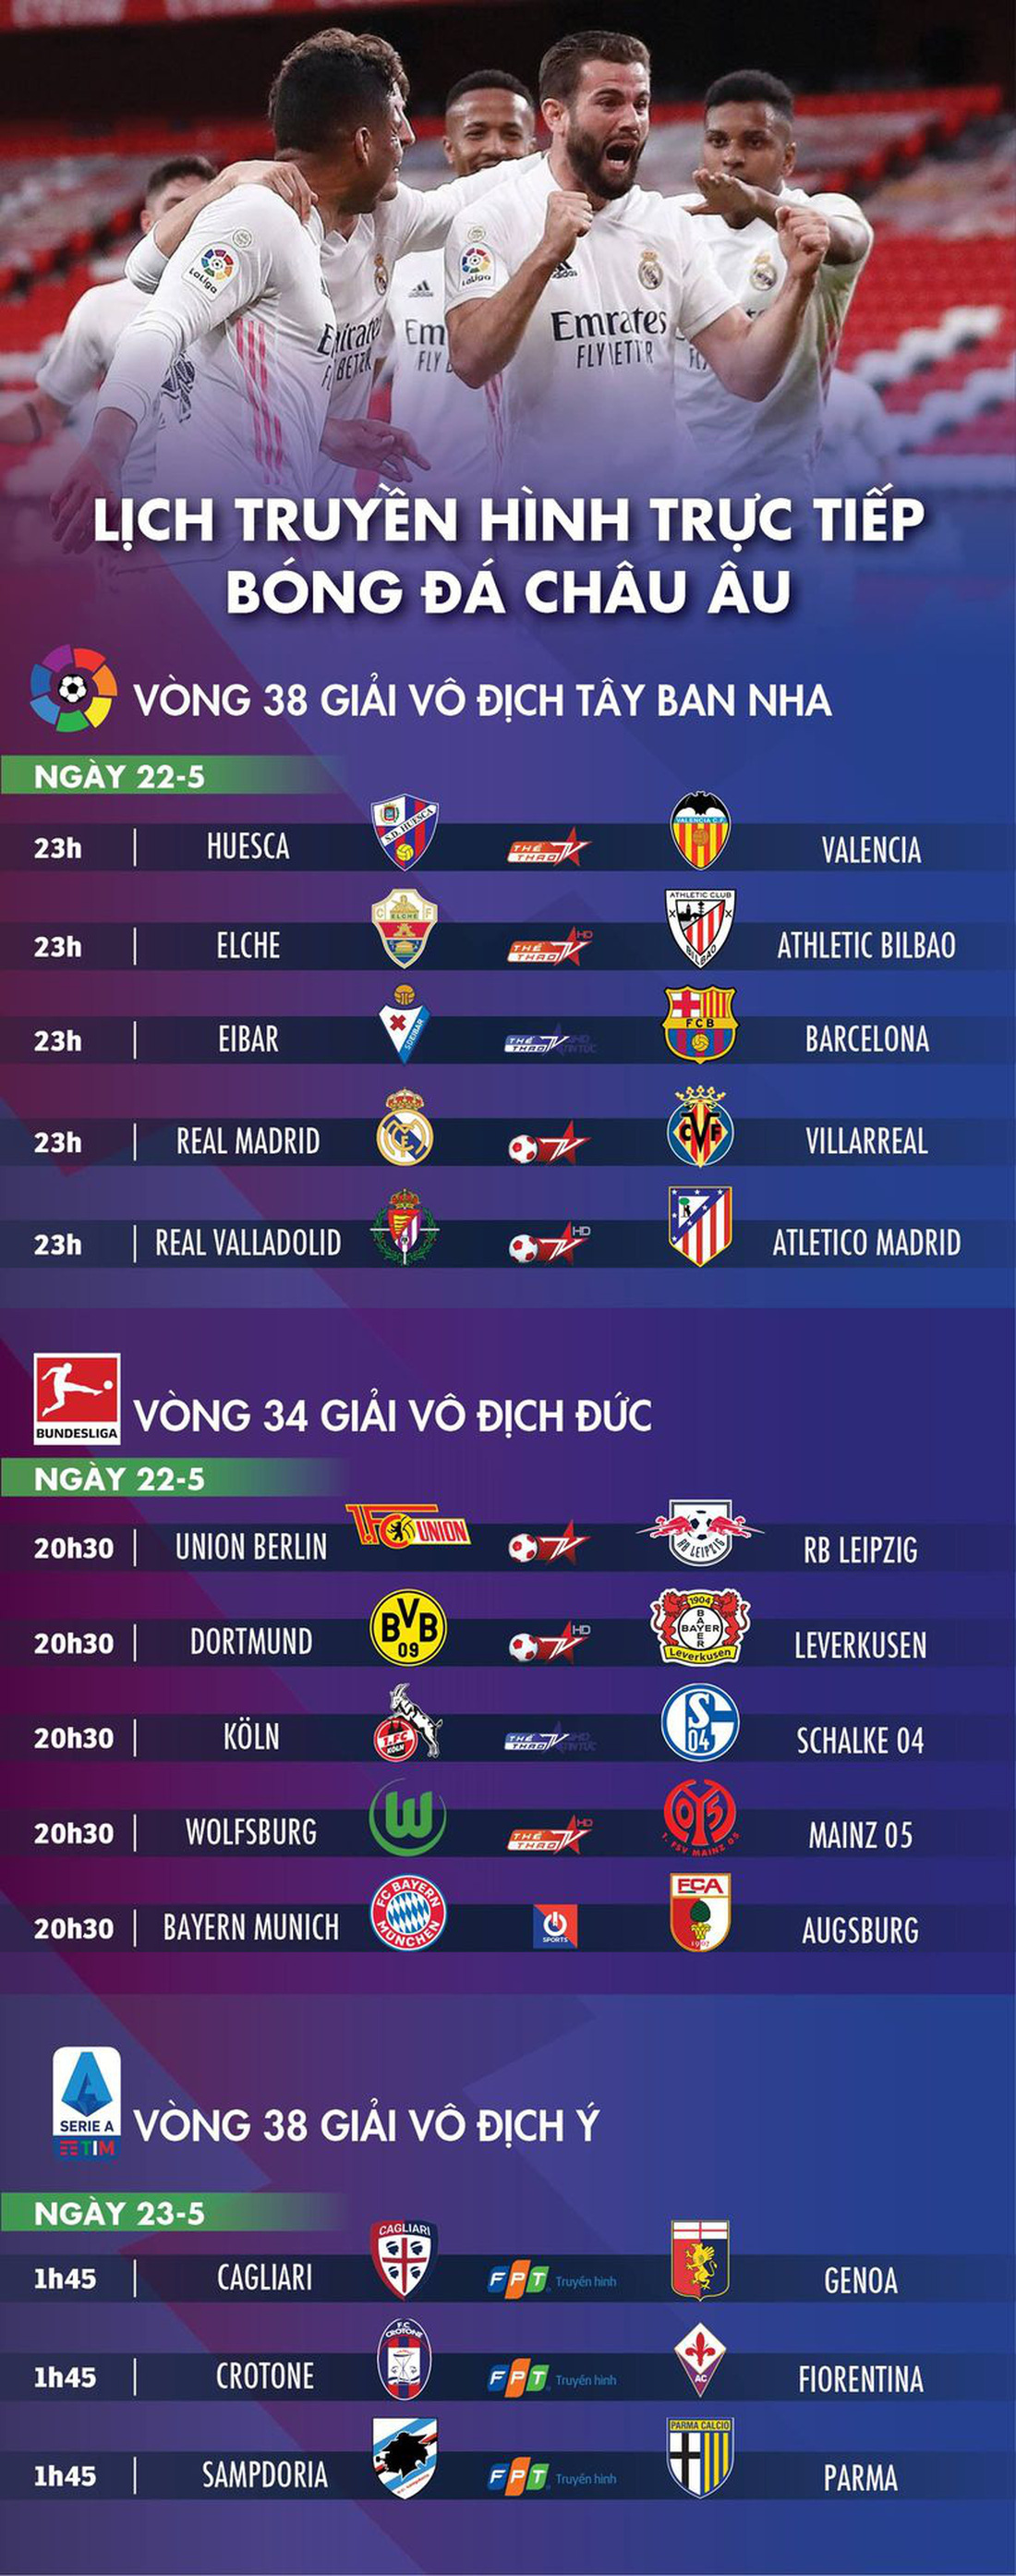 Lịch trực tiếp bóng đá châu Âu 22-5: Chung kết ở La Liga - Ảnh 1.